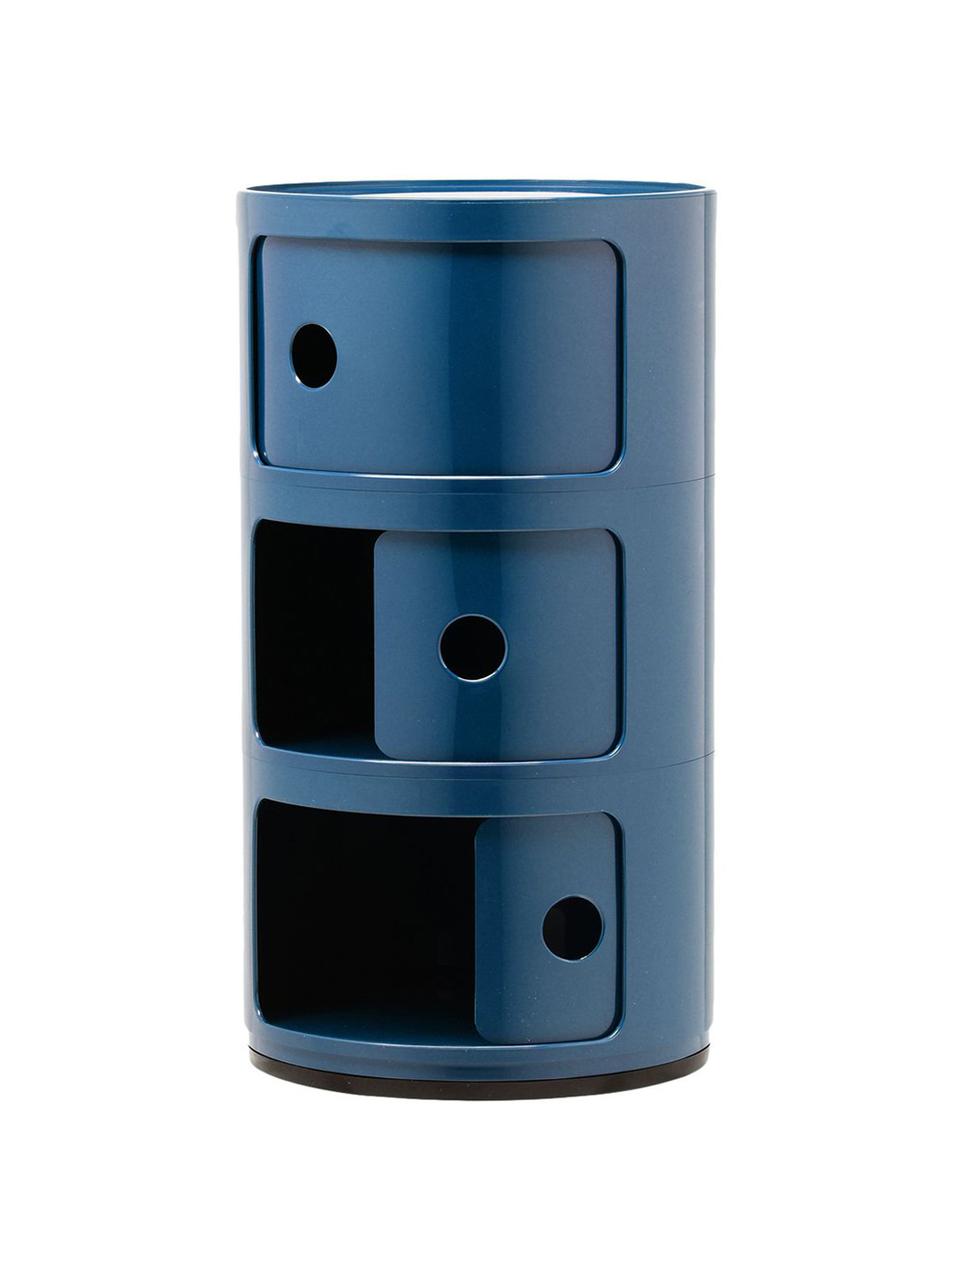 Dizajnový kontajner Componibili, 3 moduly, Plast, certifikát Greenguard, Modrá, lesklá, Ø 32 x V 59 cm